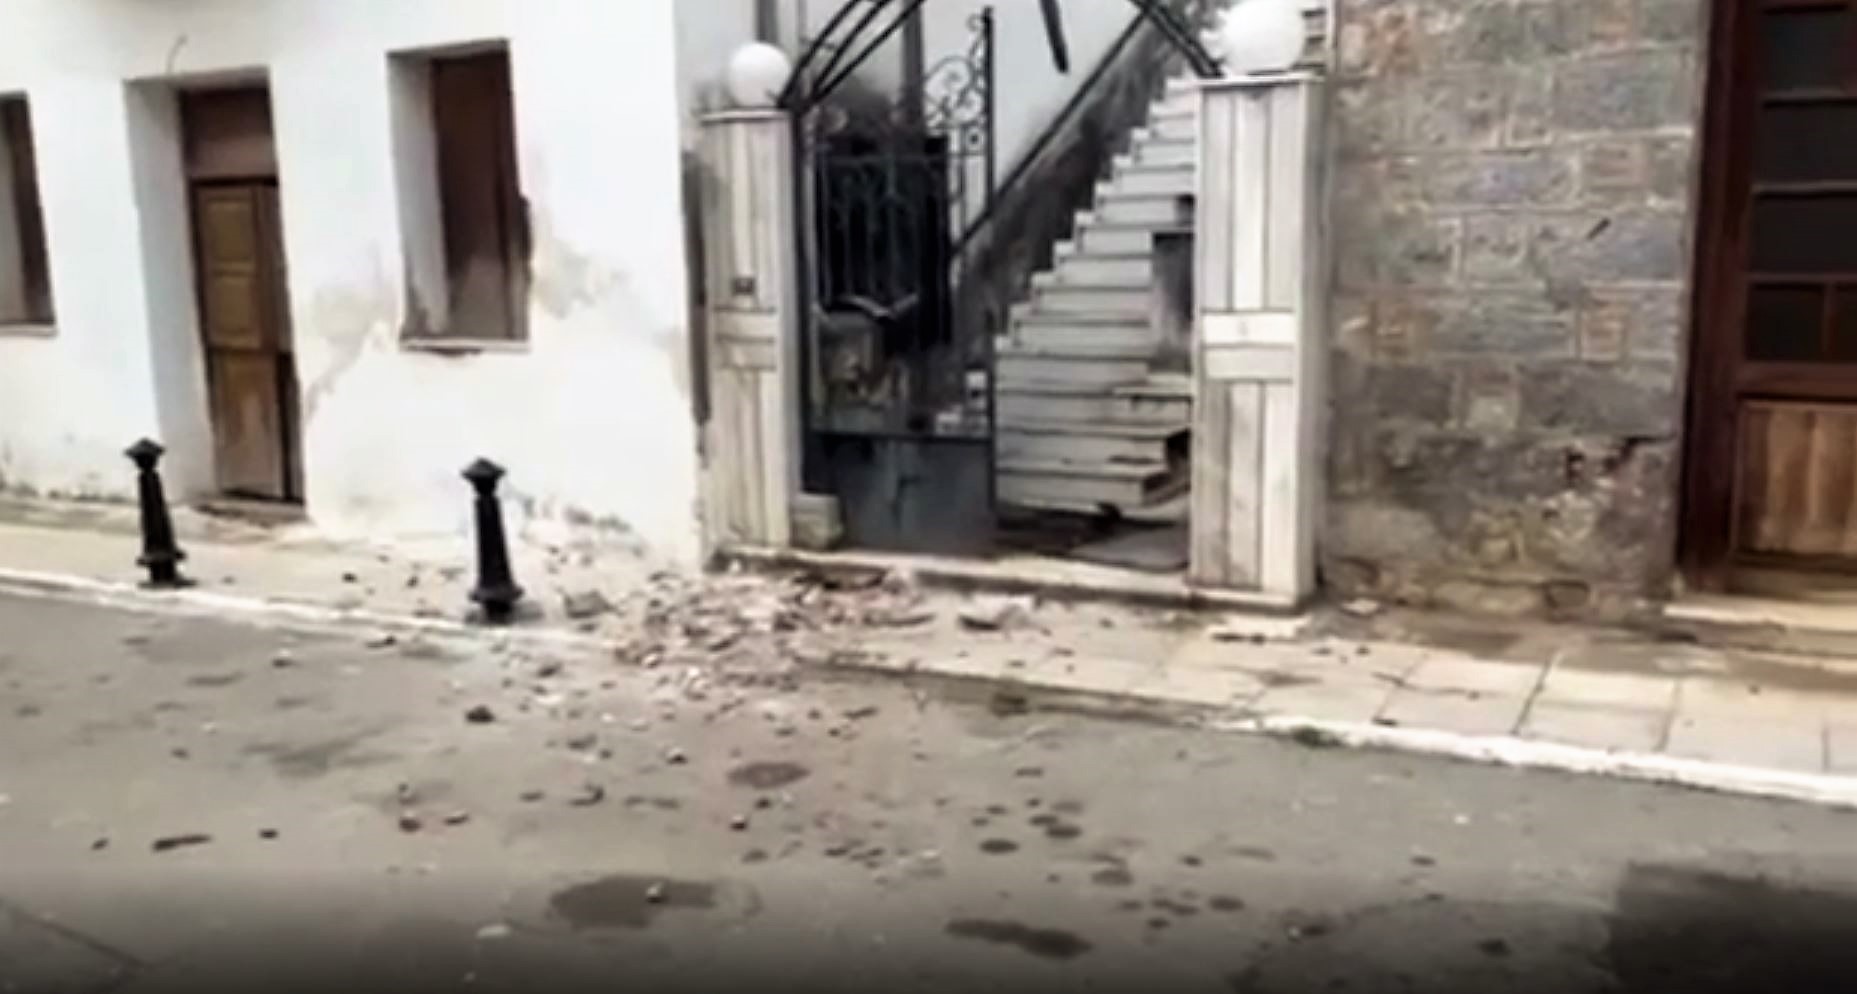 Σεισμός στην Εύβοια: Τα δύο ενεργά ρήγματα που προκαλούν ανησυχία - Νύχτα αγωνίας για τους κατοίκους